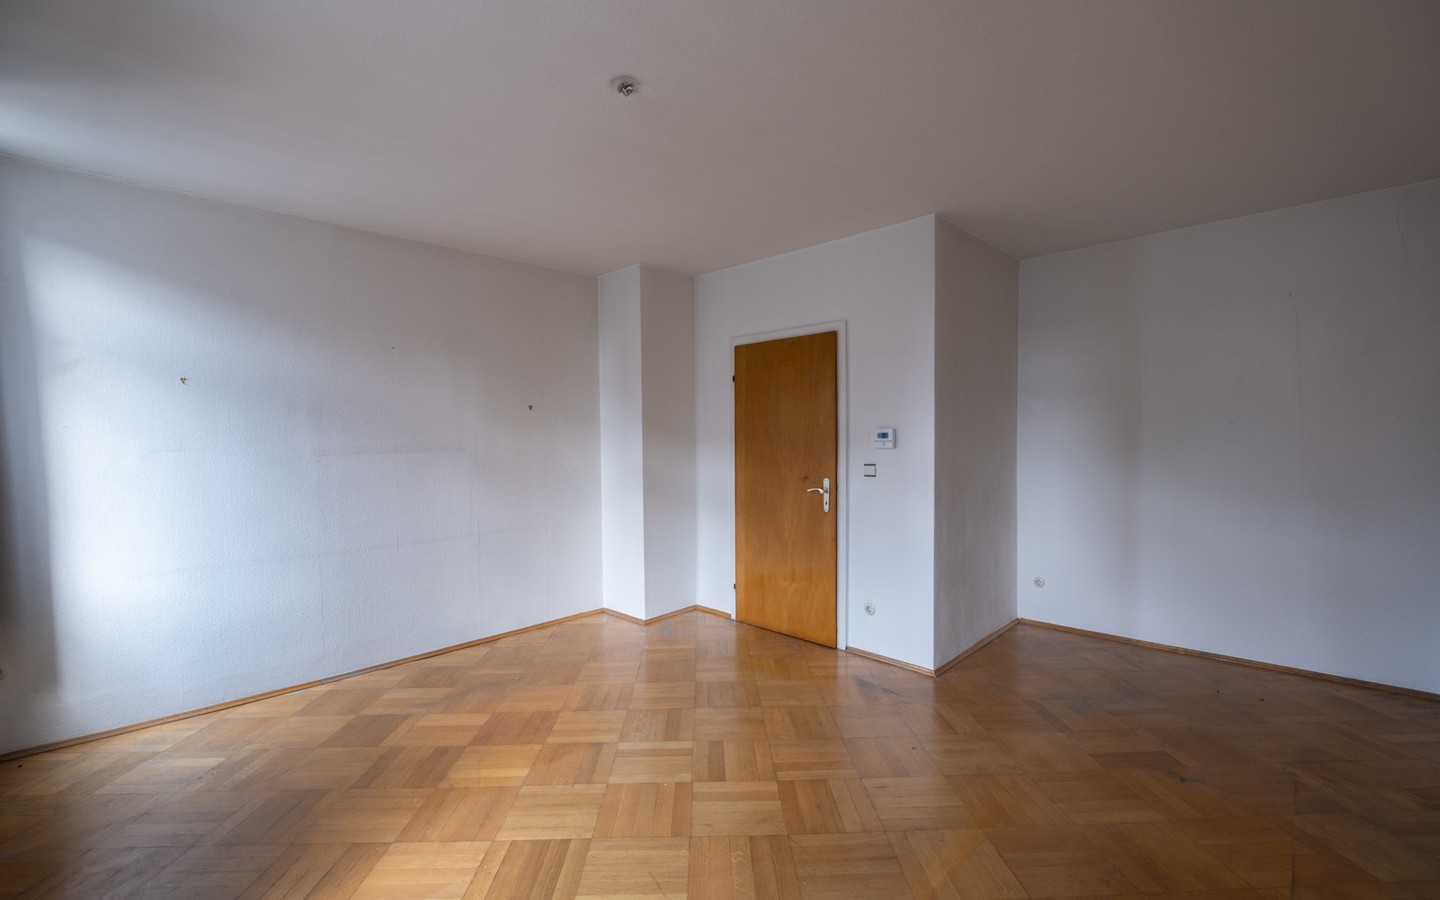 Zimmer Bestandsimmobilie - Mehrfamilienhaus mit Aufstockungspotenzial und ausbaufähiger Scheune (insg. ca. 700 qm möglich)